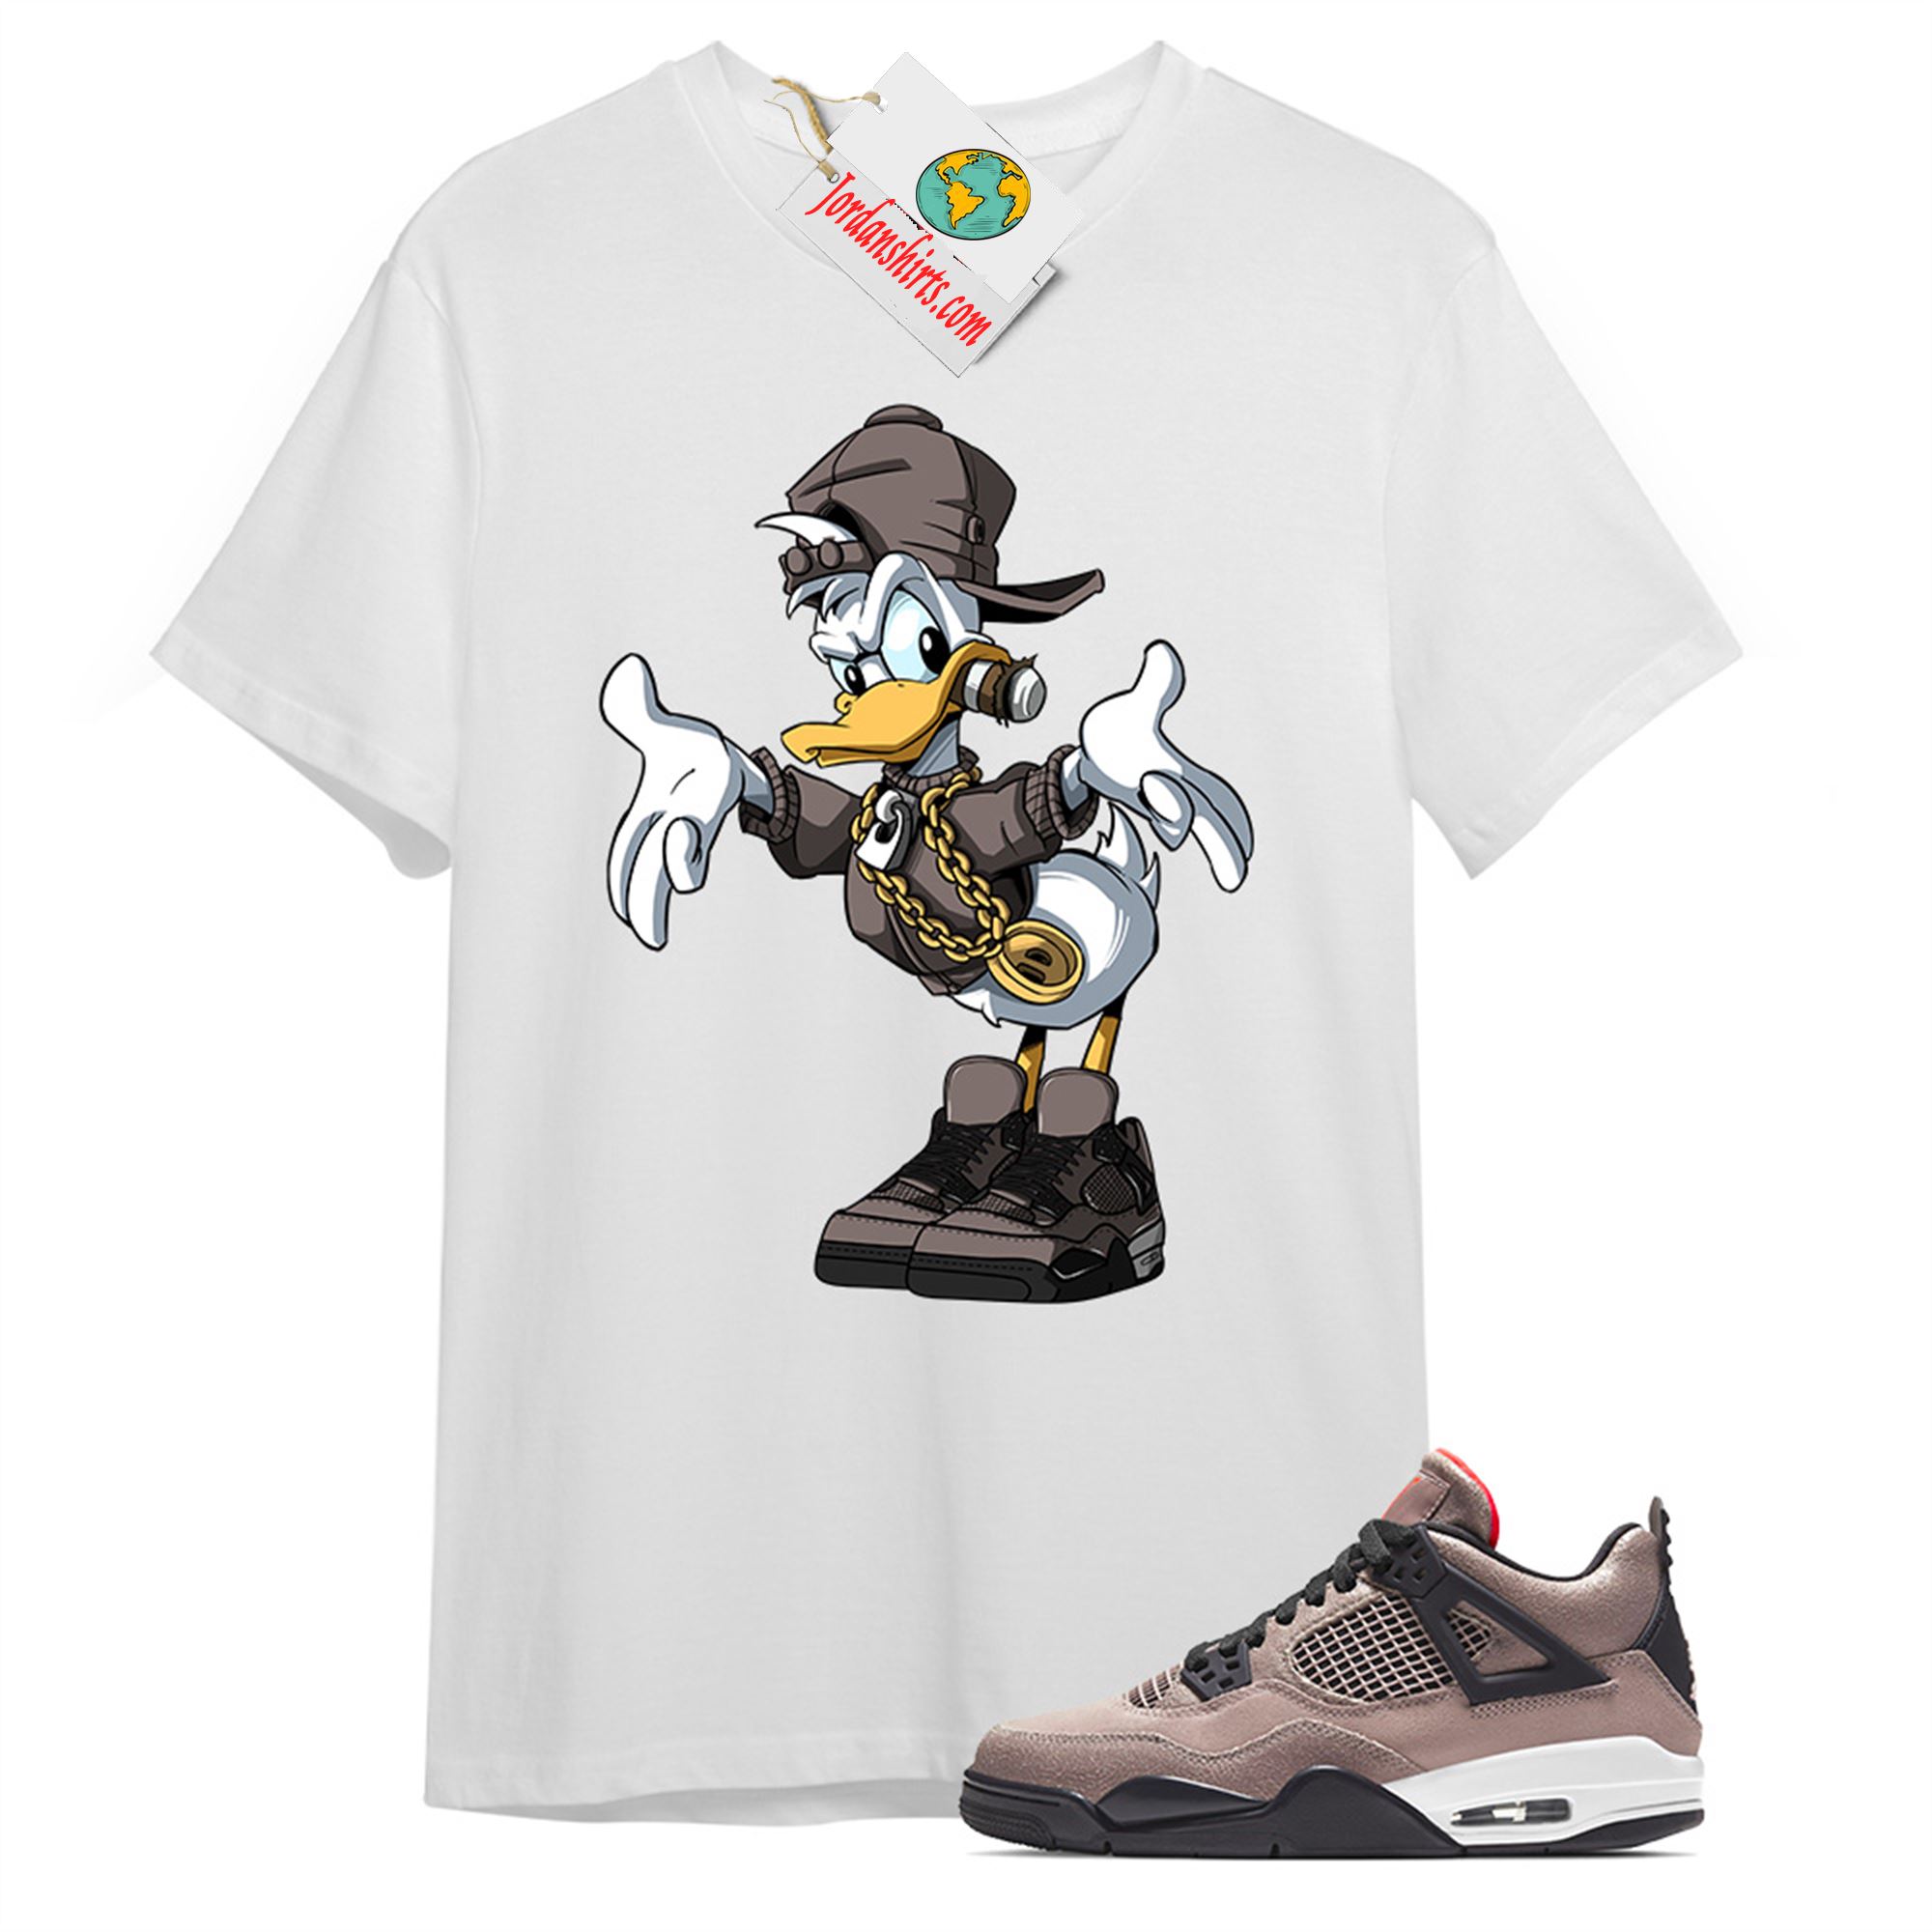 Jordan 4 Shirt, Donald Duck White T-shirt Air Jordan 4 Taupe Haze 4s Plus Size Up To 5xl